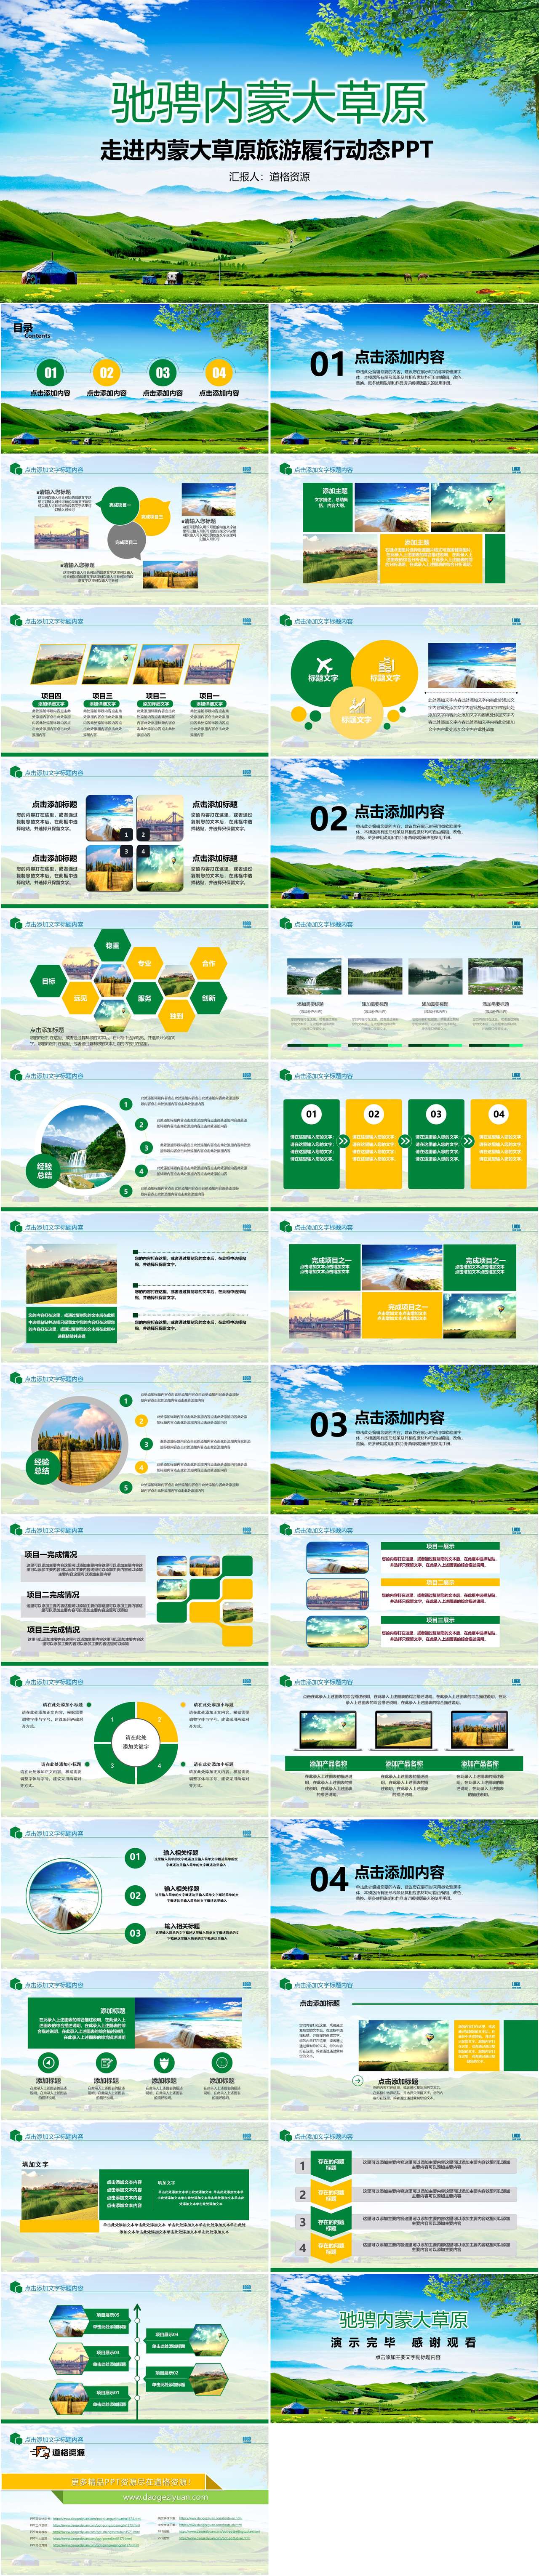 旅游服务旅行绿色草原自由马儿PPT模板（2）